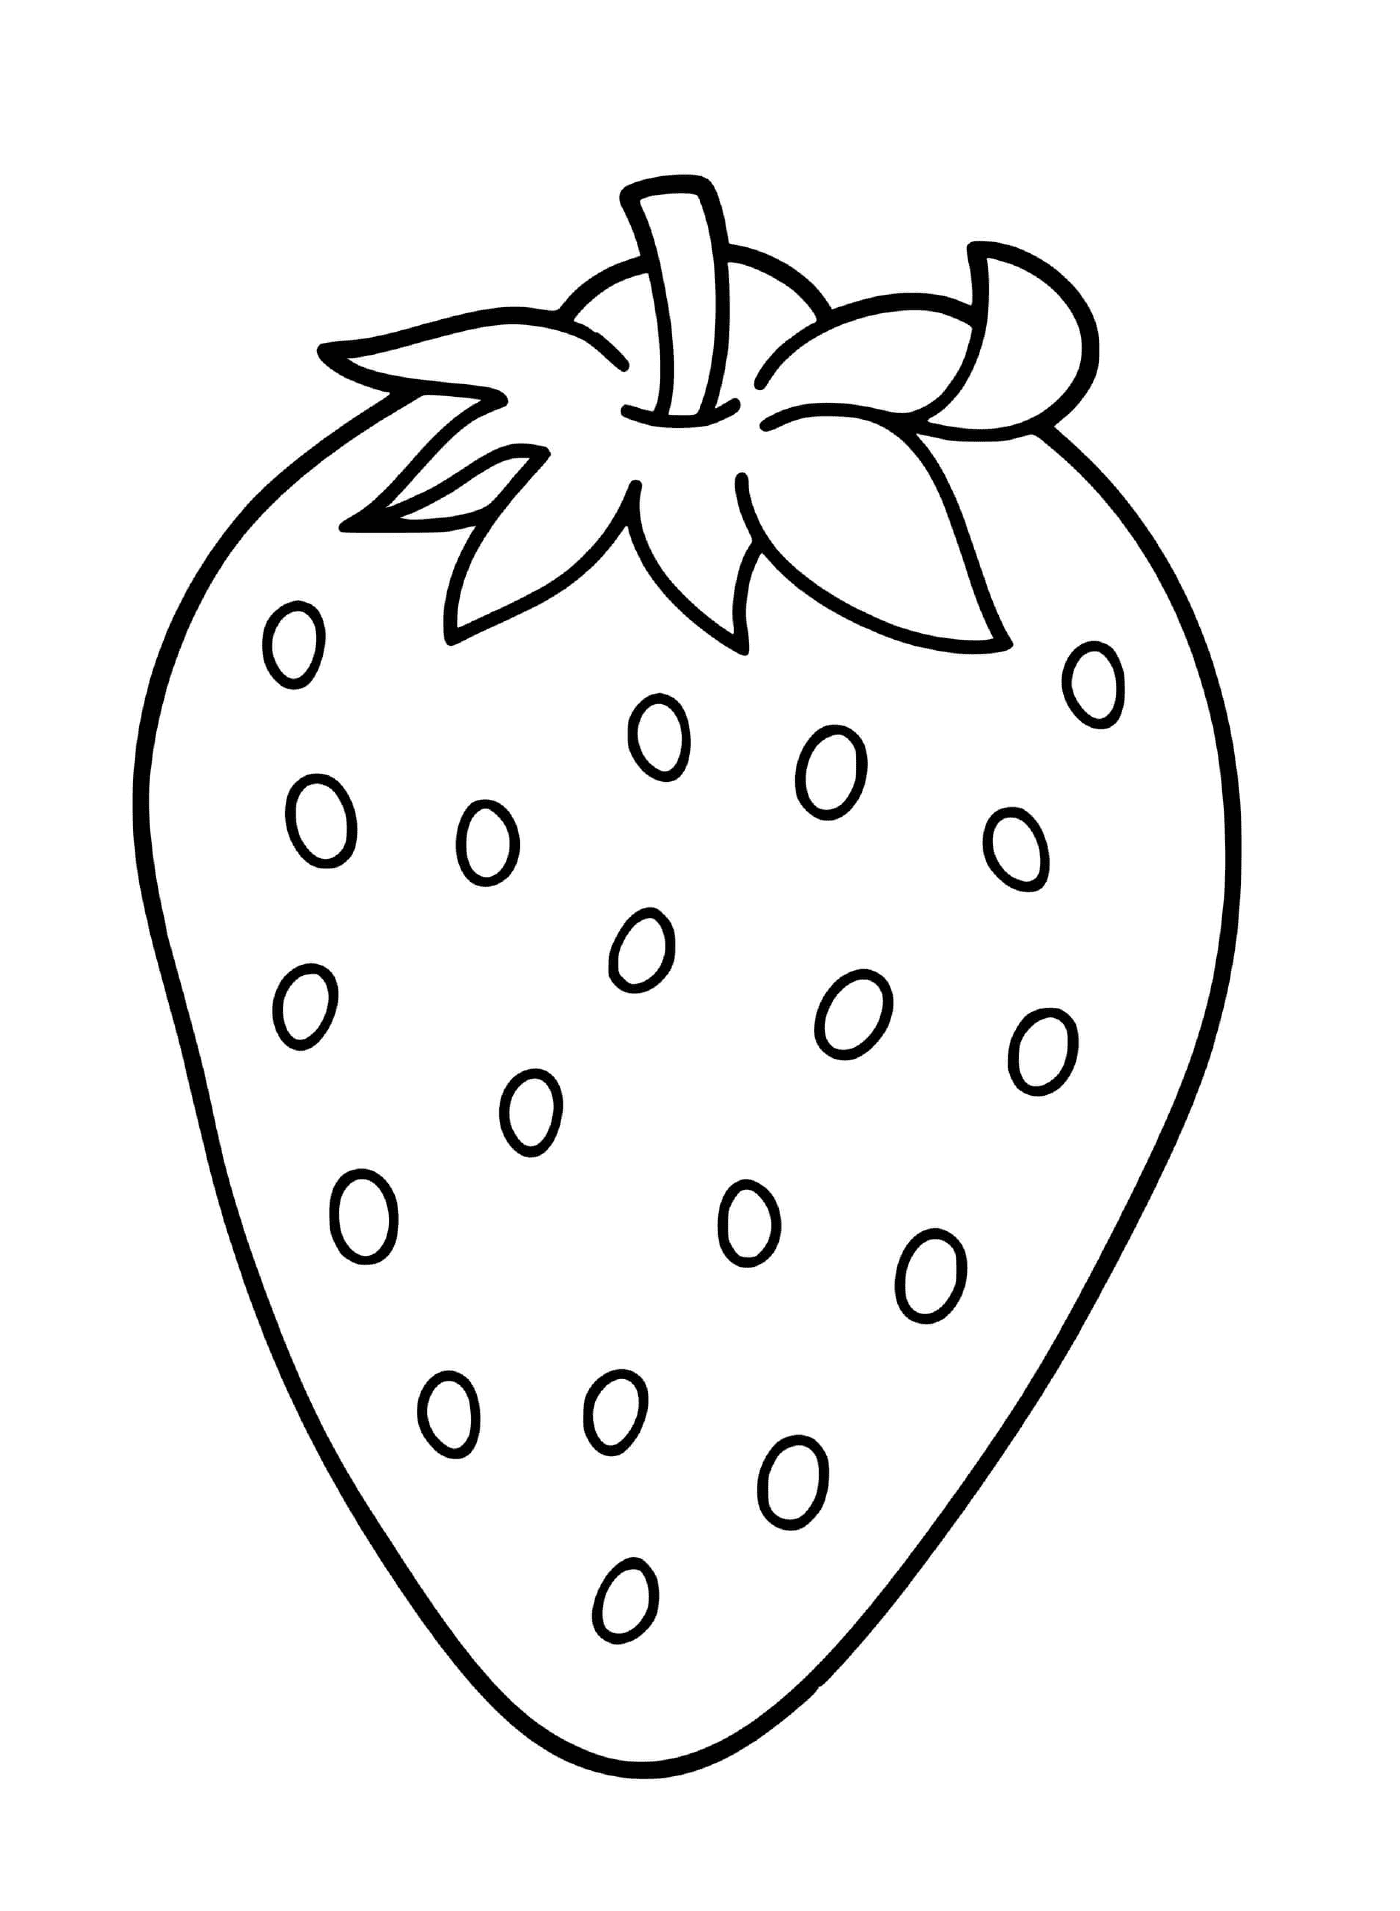  Frutas da natureza - Morango 